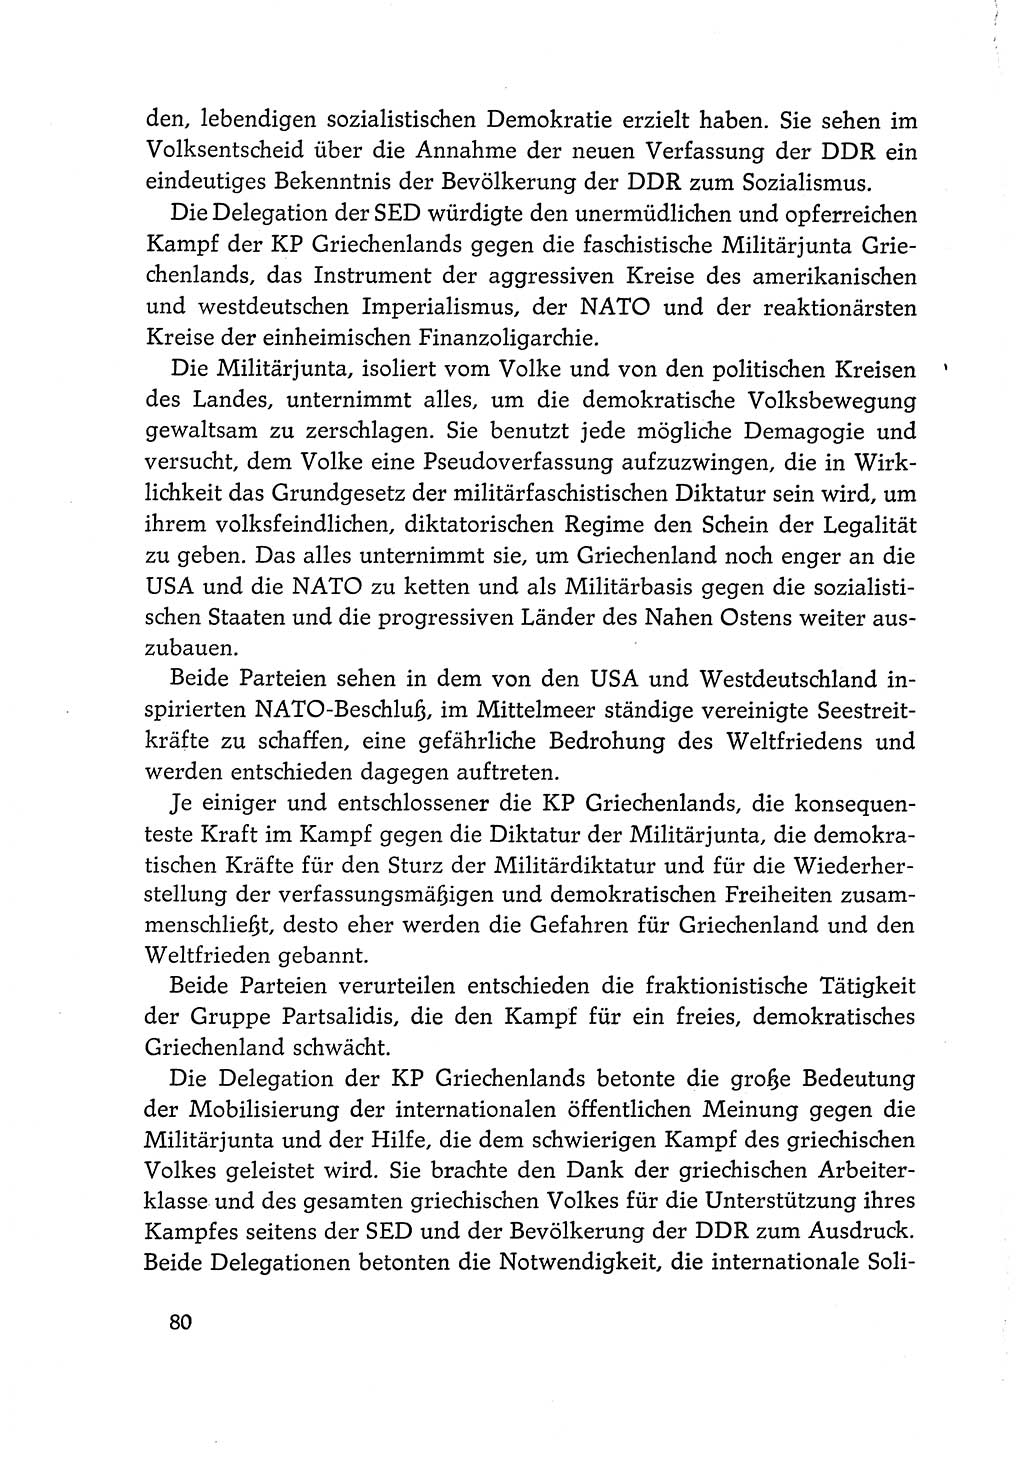 Dokumente der Sozialistischen Einheitspartei Deutschlands (SED) [Deutsche Demokratische Republik (DDR)] 1968-1969, Seite 80 (Dok. SED DDR 1968-1969, S. 80)